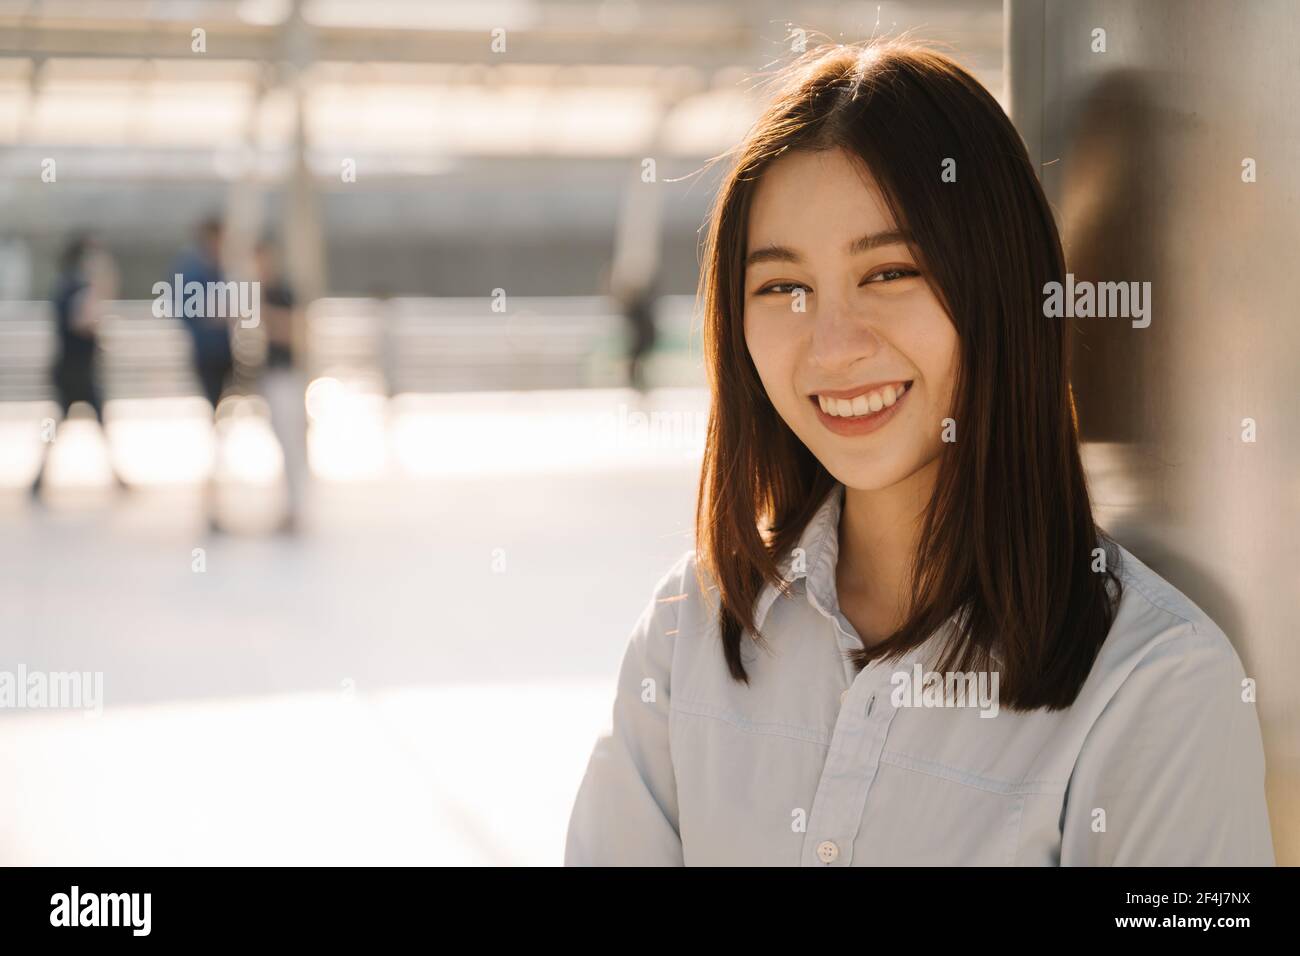 Portrait des schönen asiatischen jungen Unternehmers, der sich an der Säule lehnt Vor dem Büro, während Sie lächeln und die Kamera betrachten Stockfoto